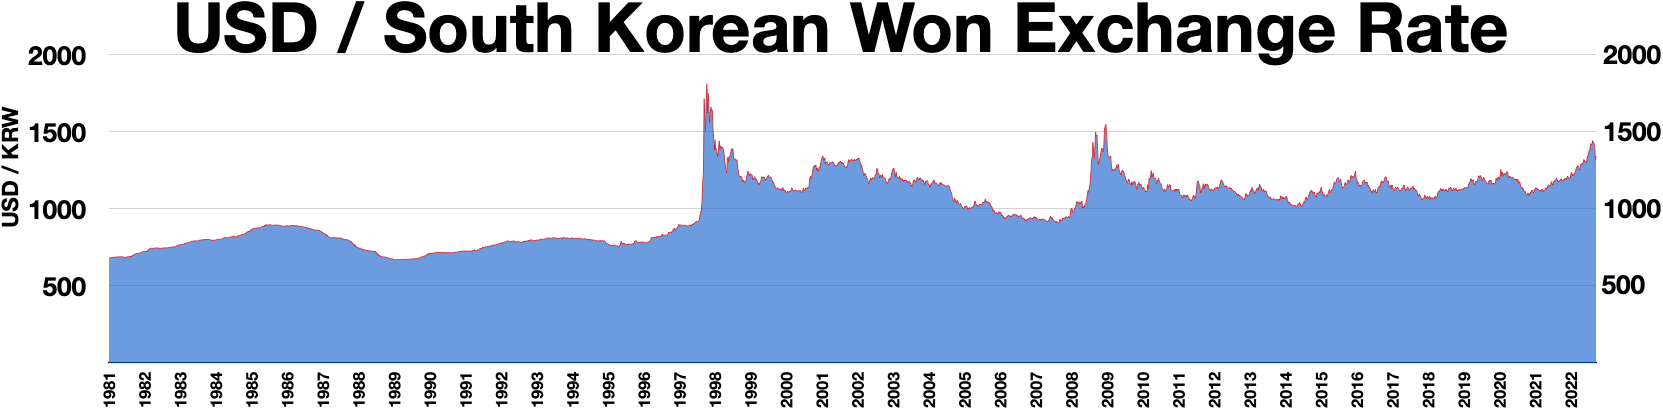 بحران مالی ۱۹۹۷ آسیا: زمانی که ببرهای آسیا سقوط کردند